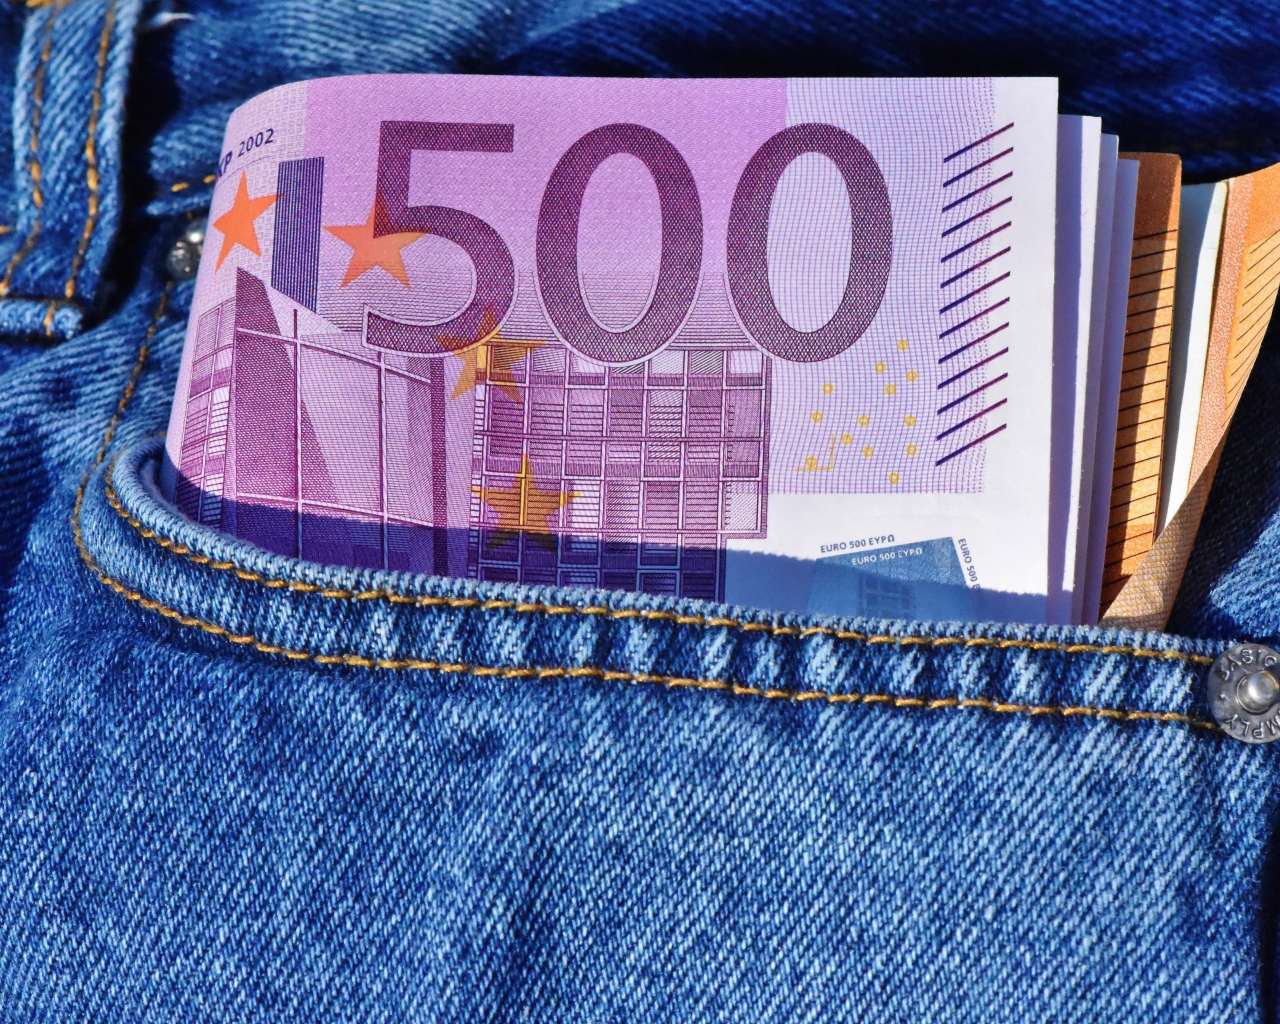 Пачка купюр евро в кармане 